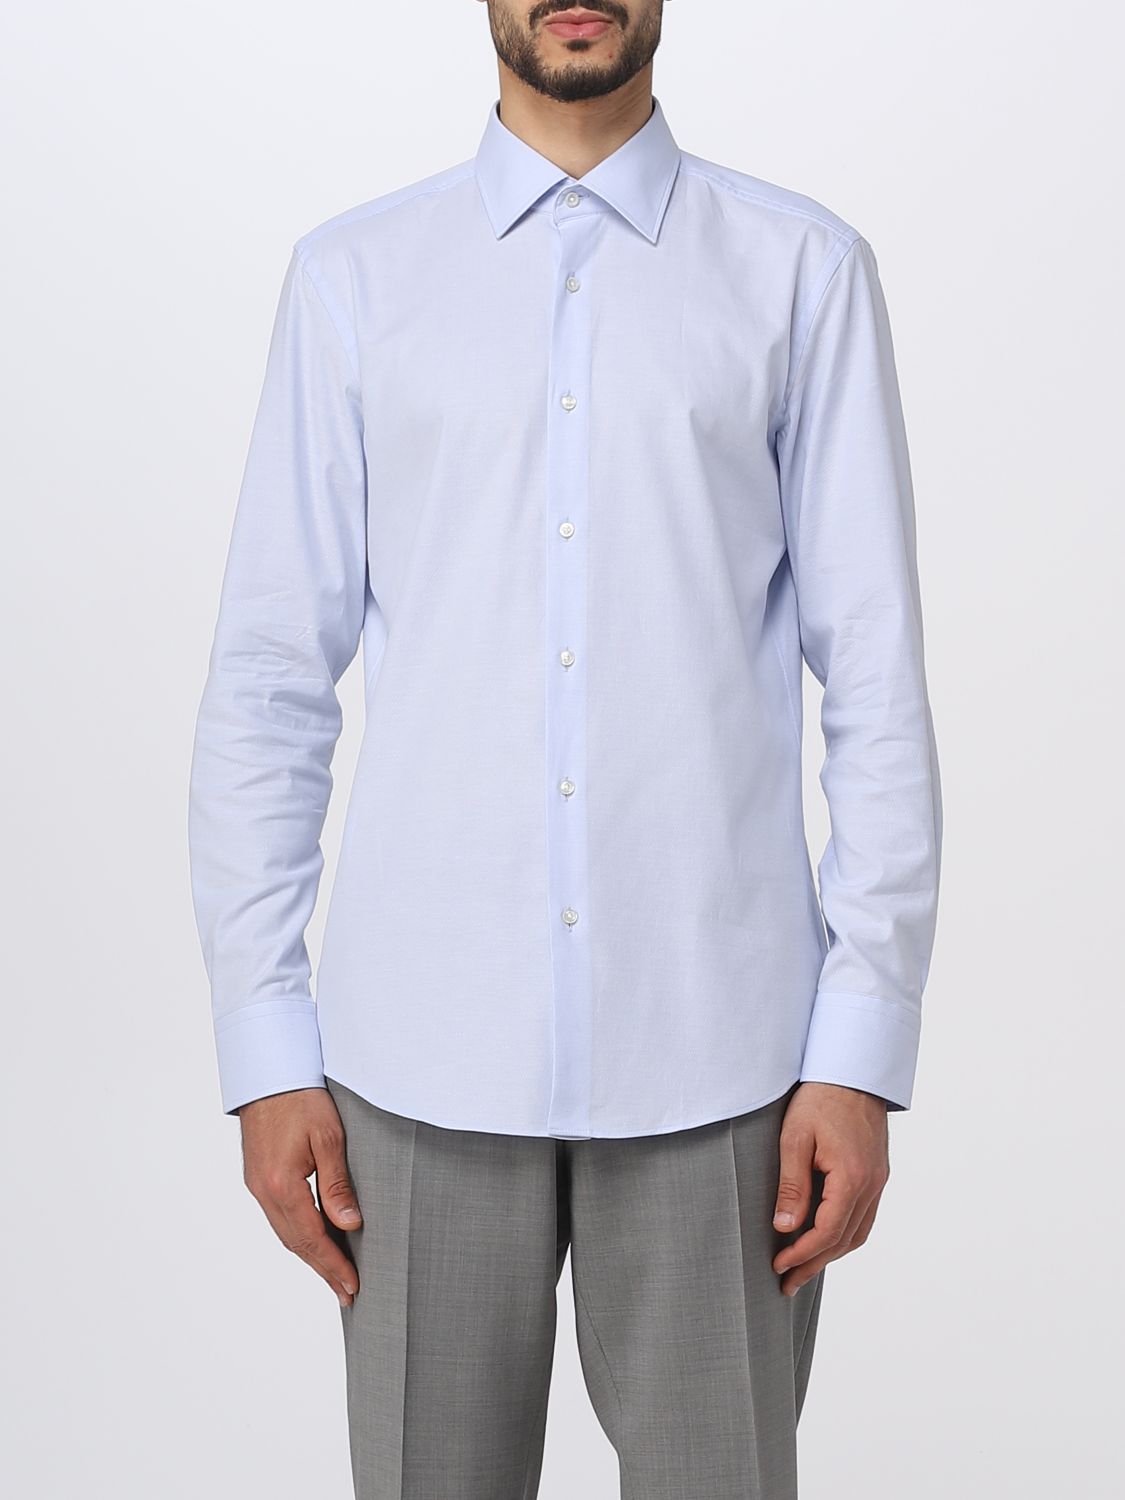 BOSS: shirt for man - Gnawed Blue | Boss shirt 50490272 online on ...